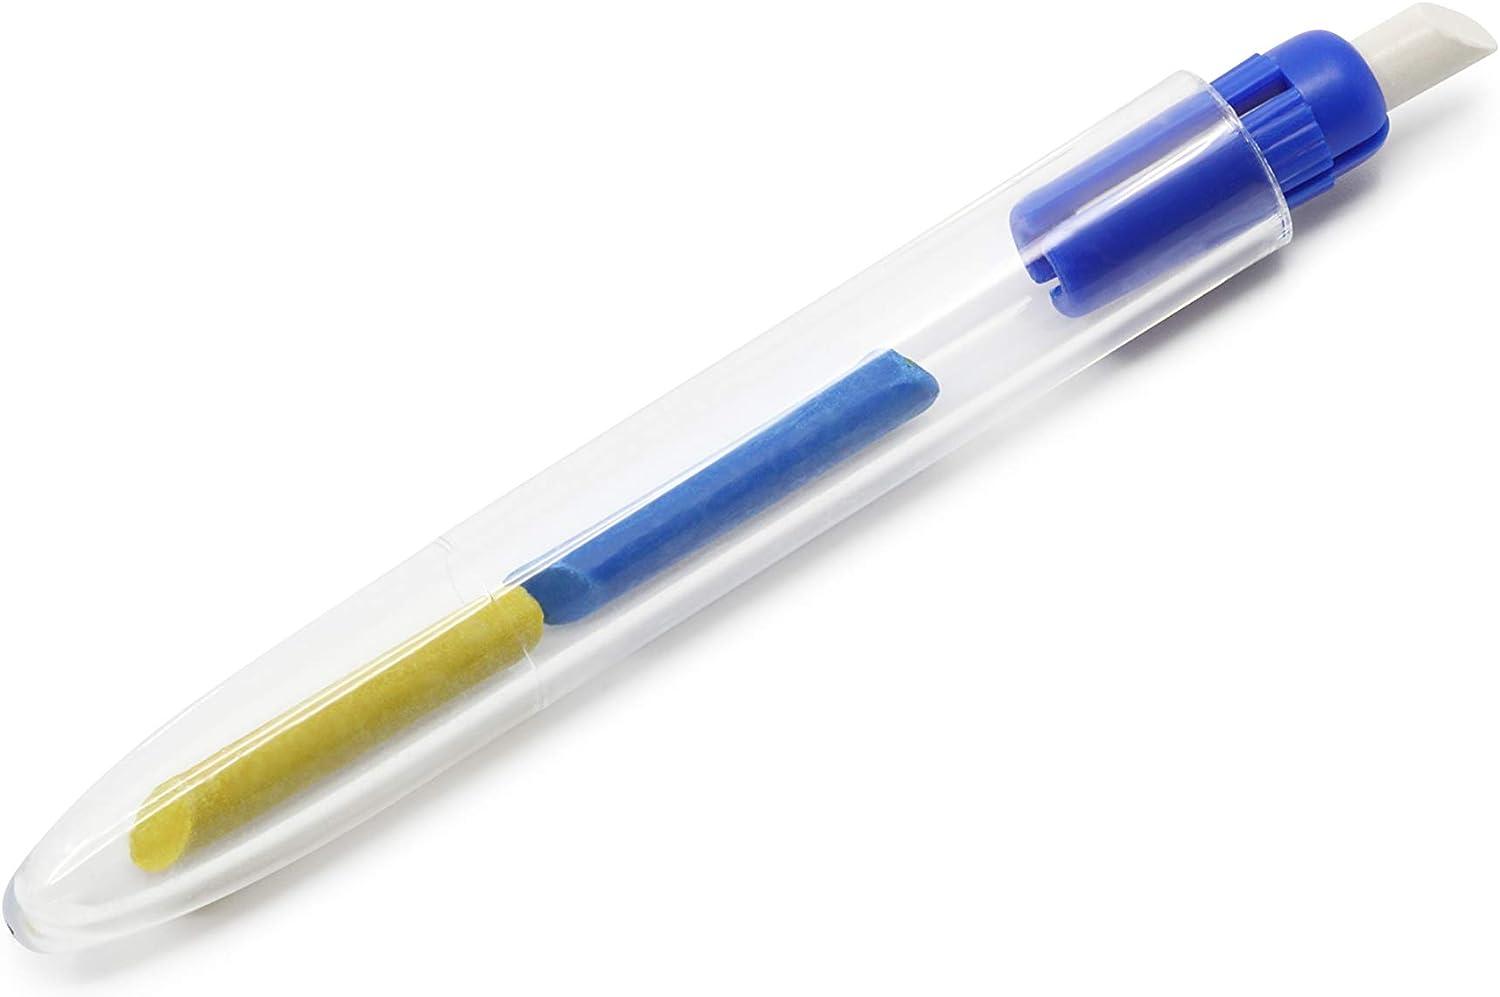 Tailor's Chalk Pencil, White, Blue